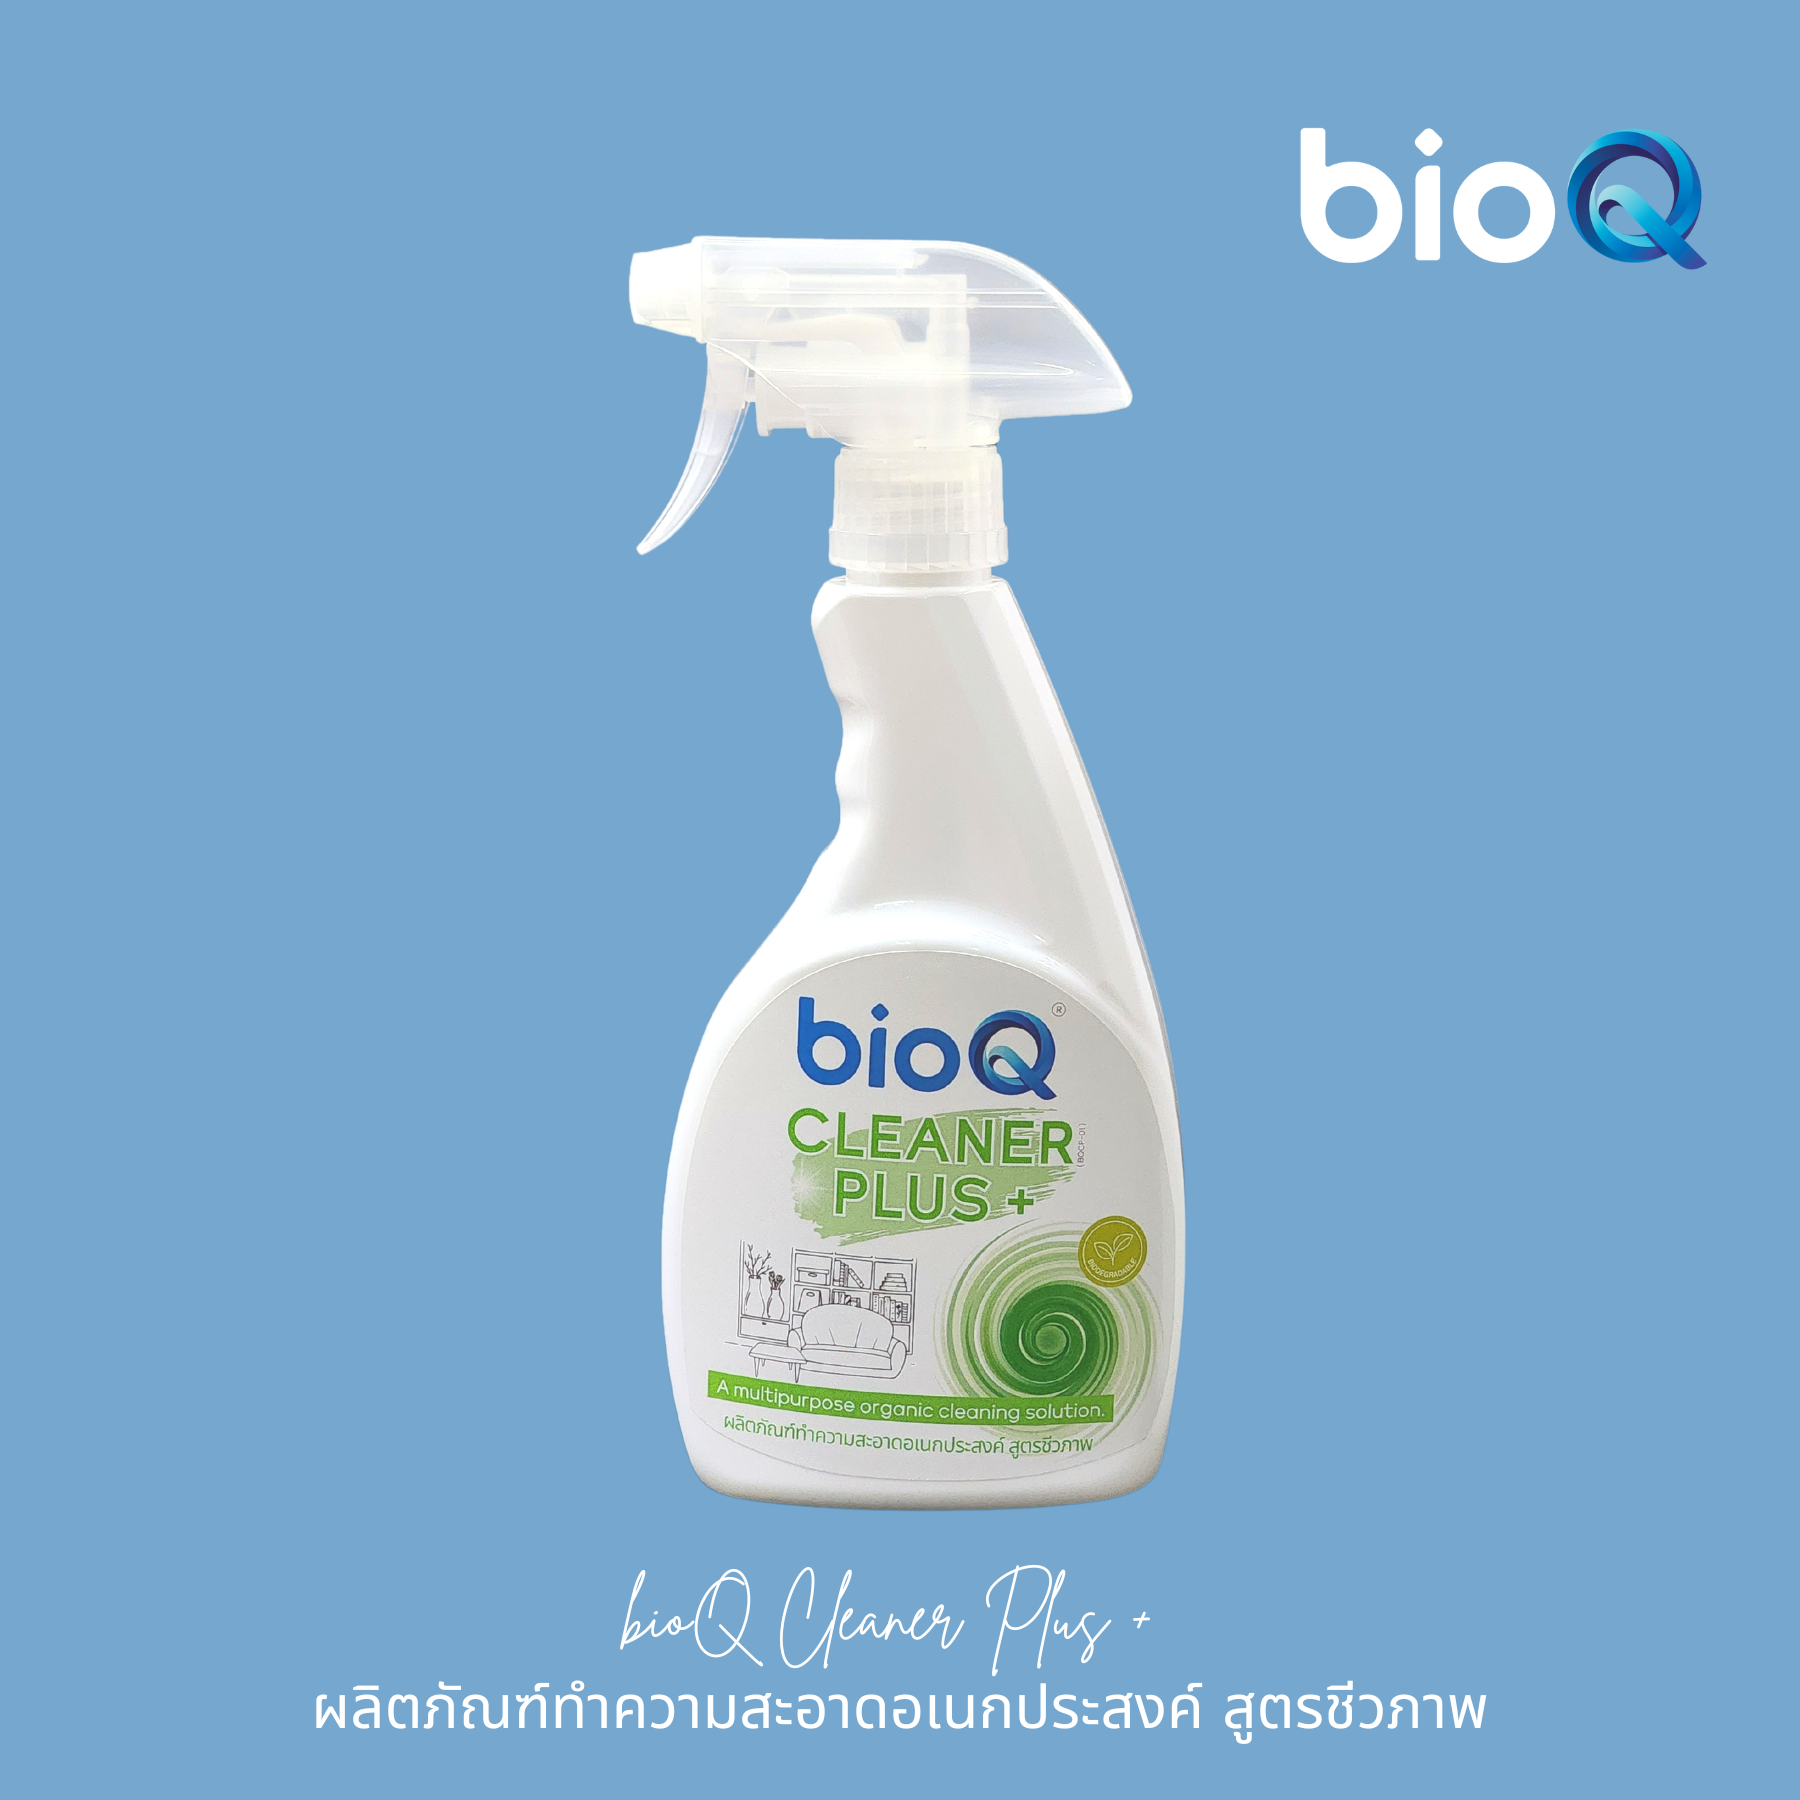 ผลิตภัณฑ์ทำความสะอาดพื้นผิวอเนกประสงค์ไบโอคิว คลีนเนอร์ พลัส / bioQ Cleaner Plus 500 ml